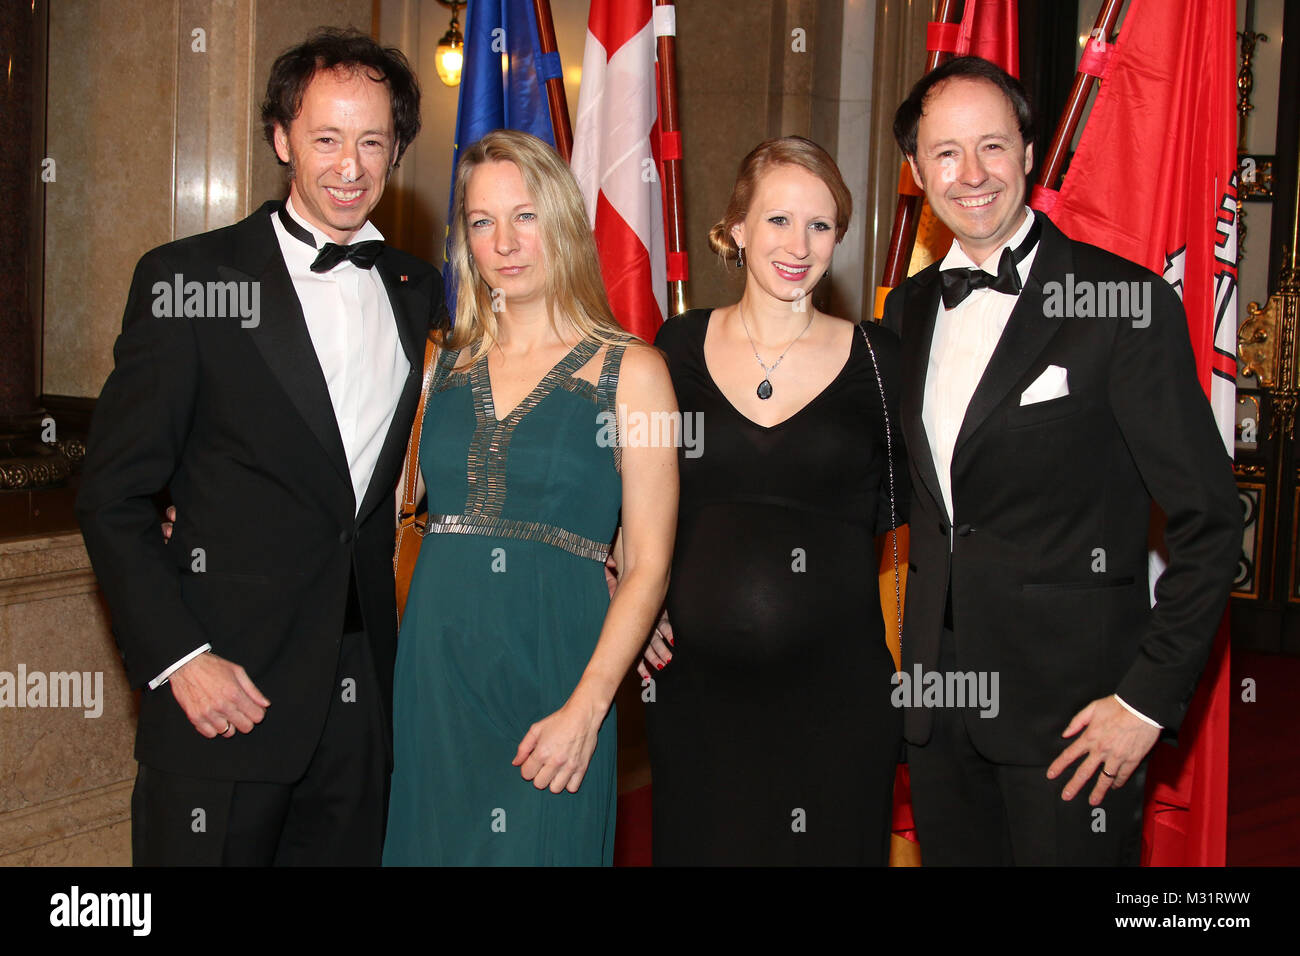 Gerrit Braun und Frederik Braun mit Ehefrauen, Matthiae Mahl, Rathaus 2014 Hambourg, 22.02.2014 Banque D'Images